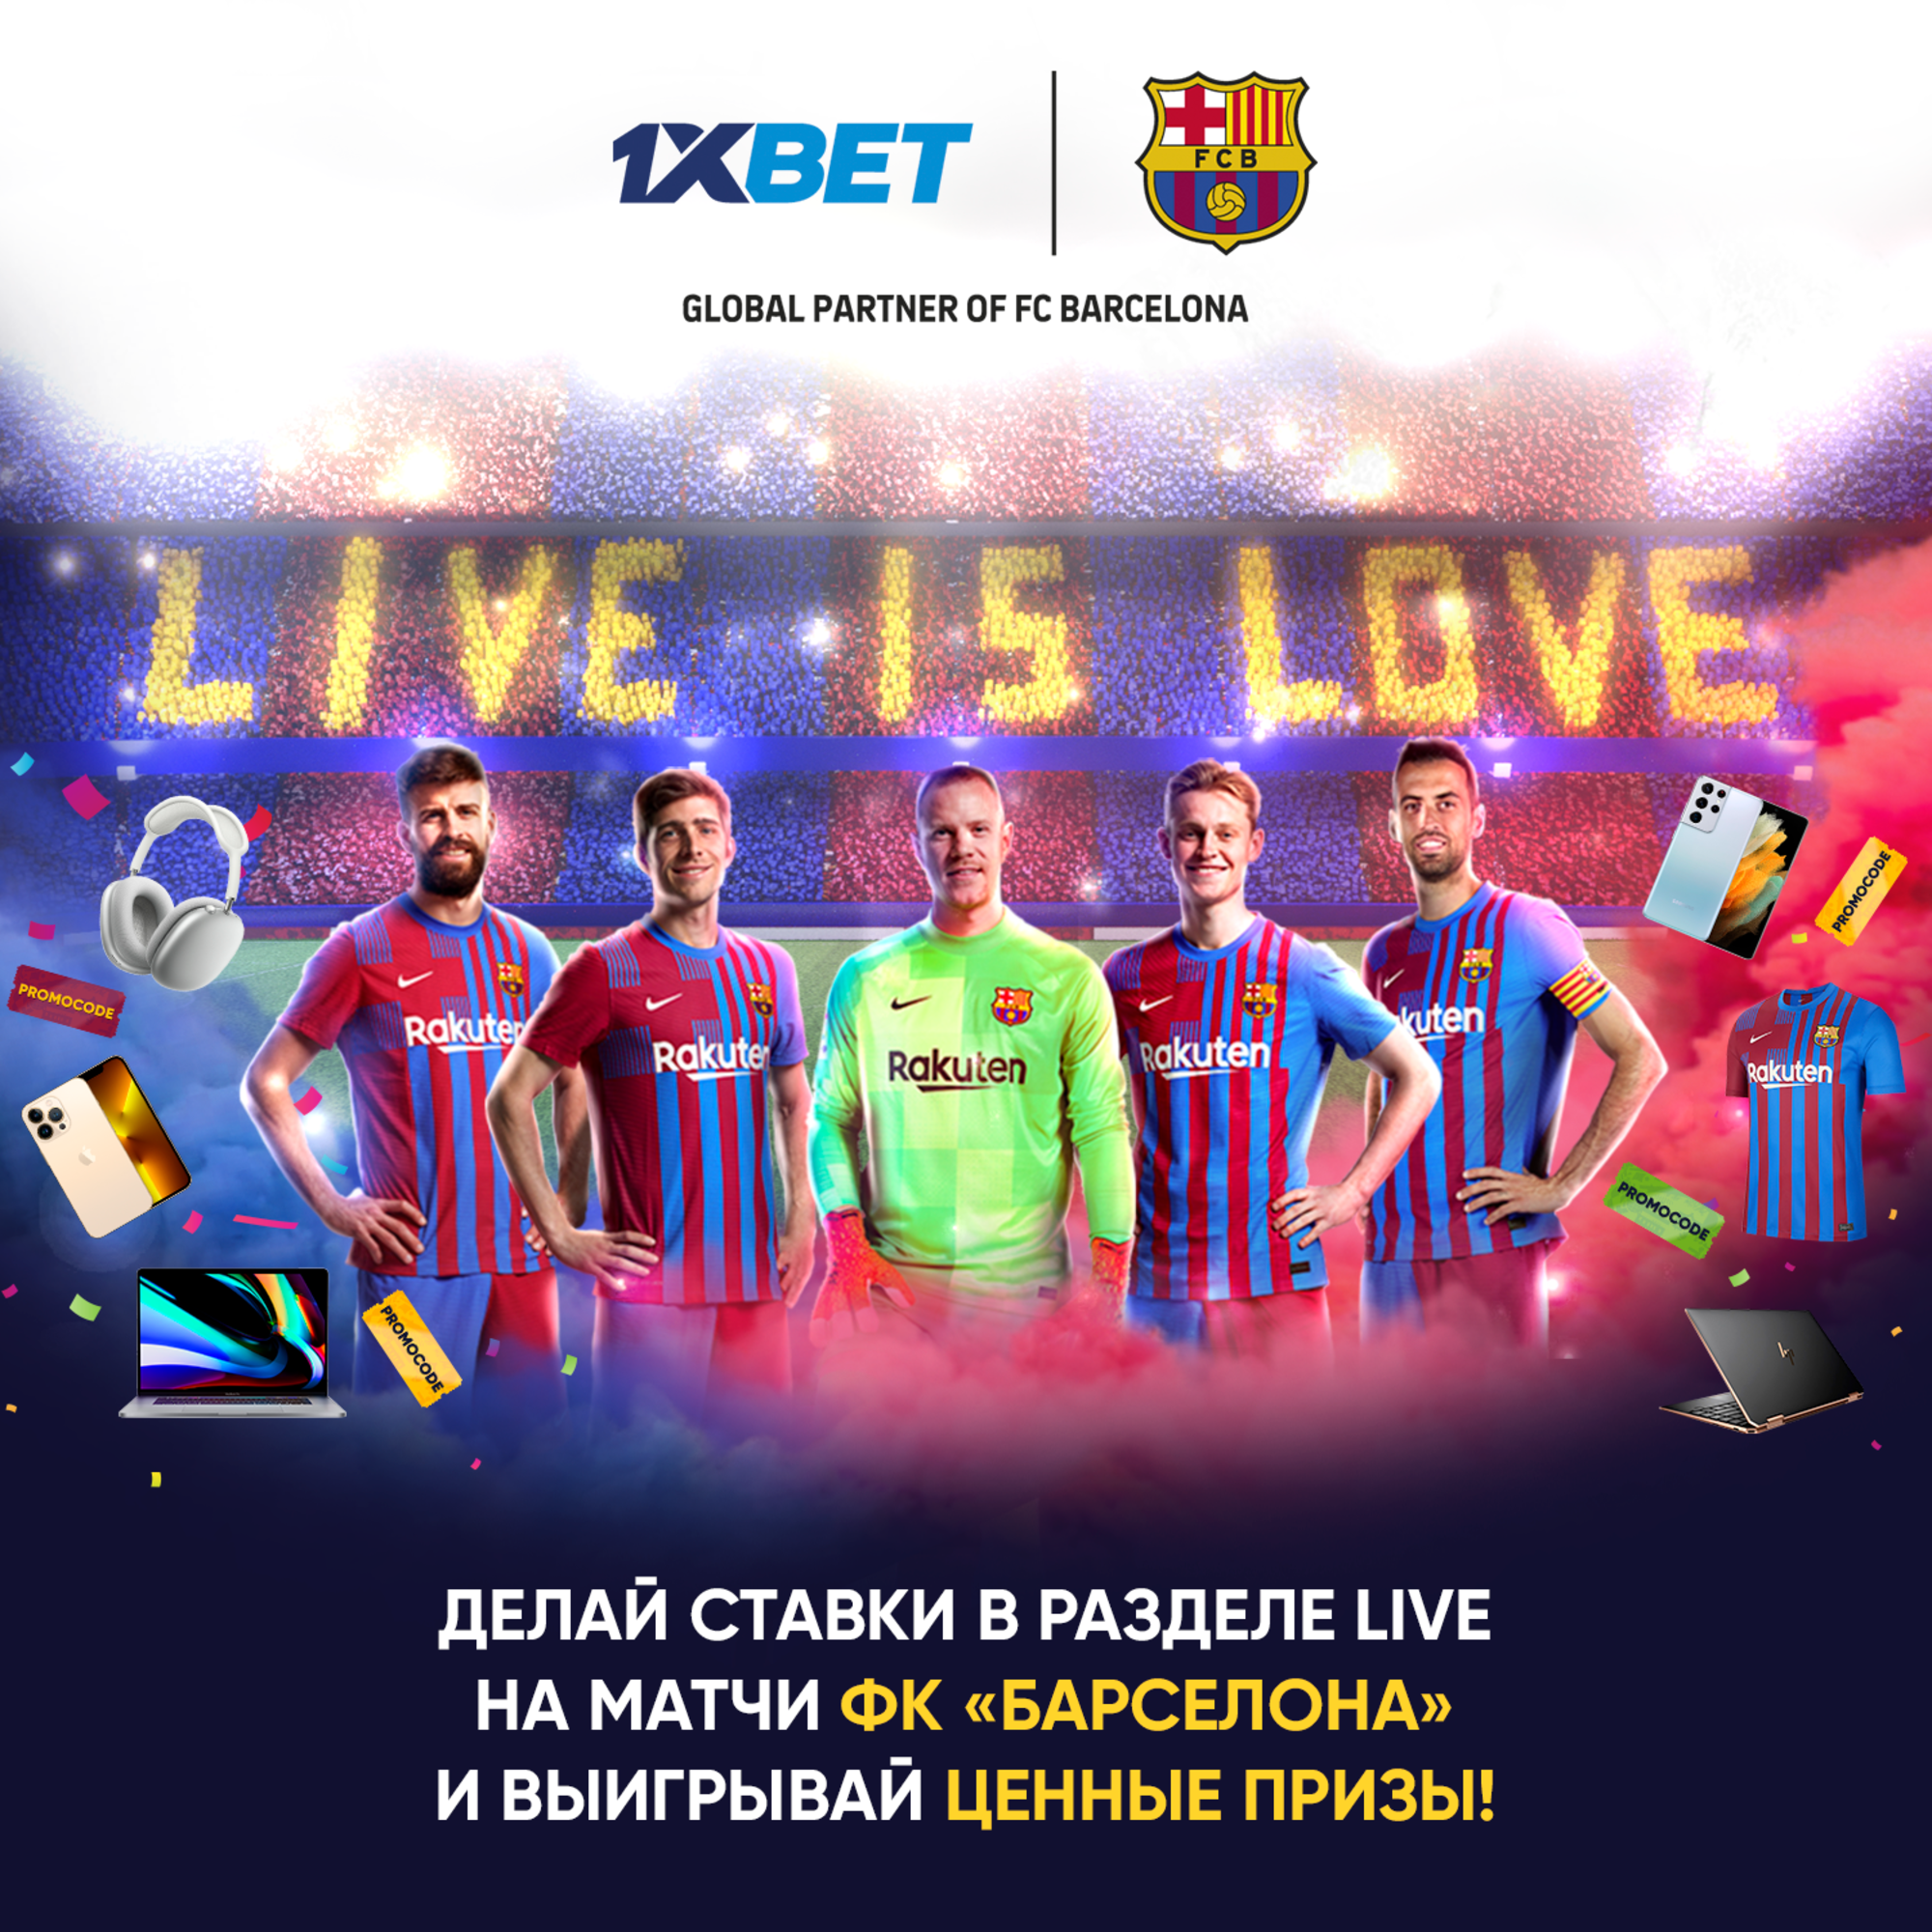 1xBet в Казахстане запускает акцию Live is Love для фанатов ФК «Барселона»